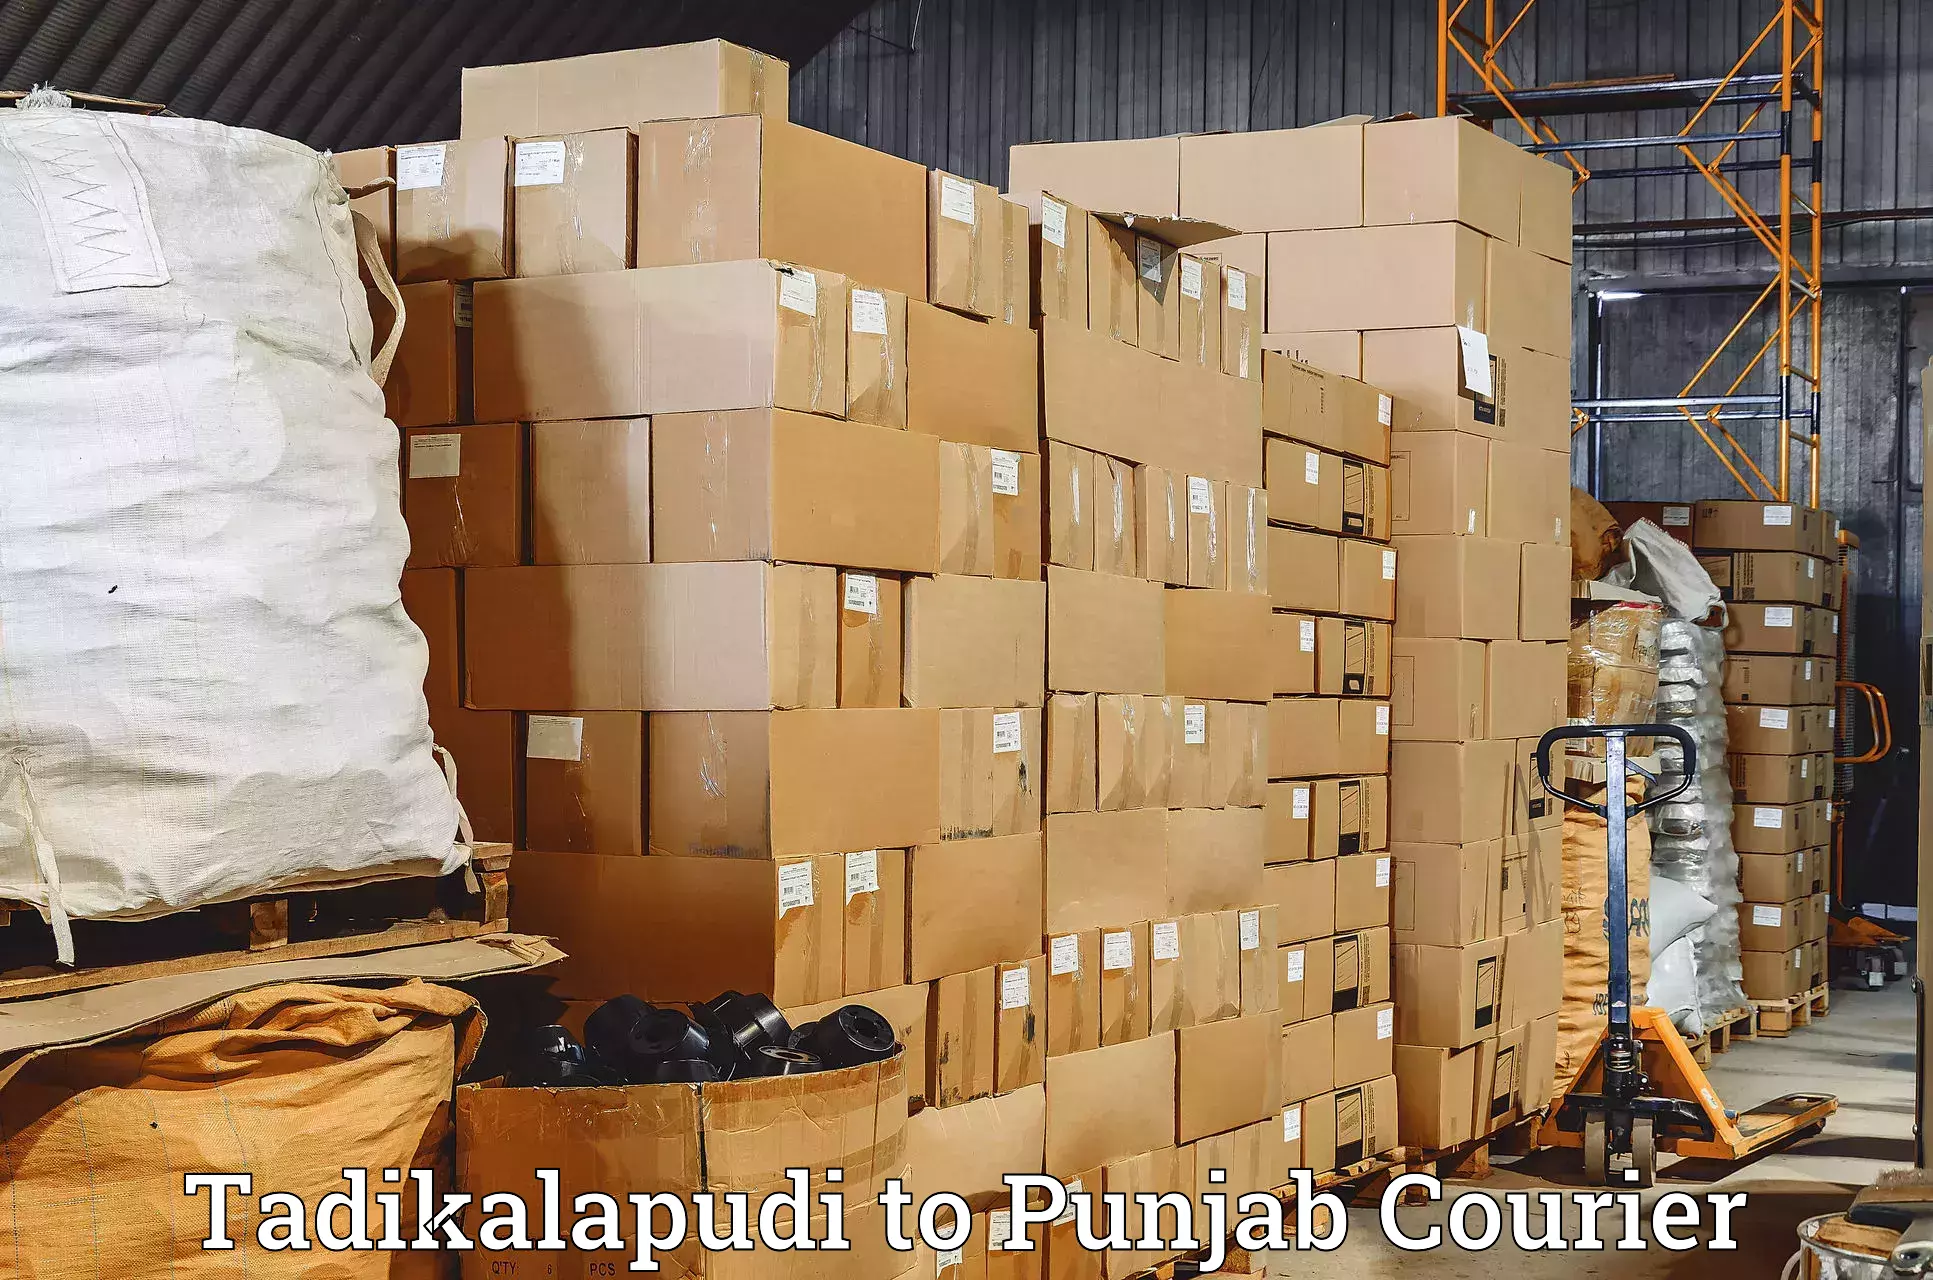 Overnight delivery services Tadikalapudi to Central University of Punjab Bathinda